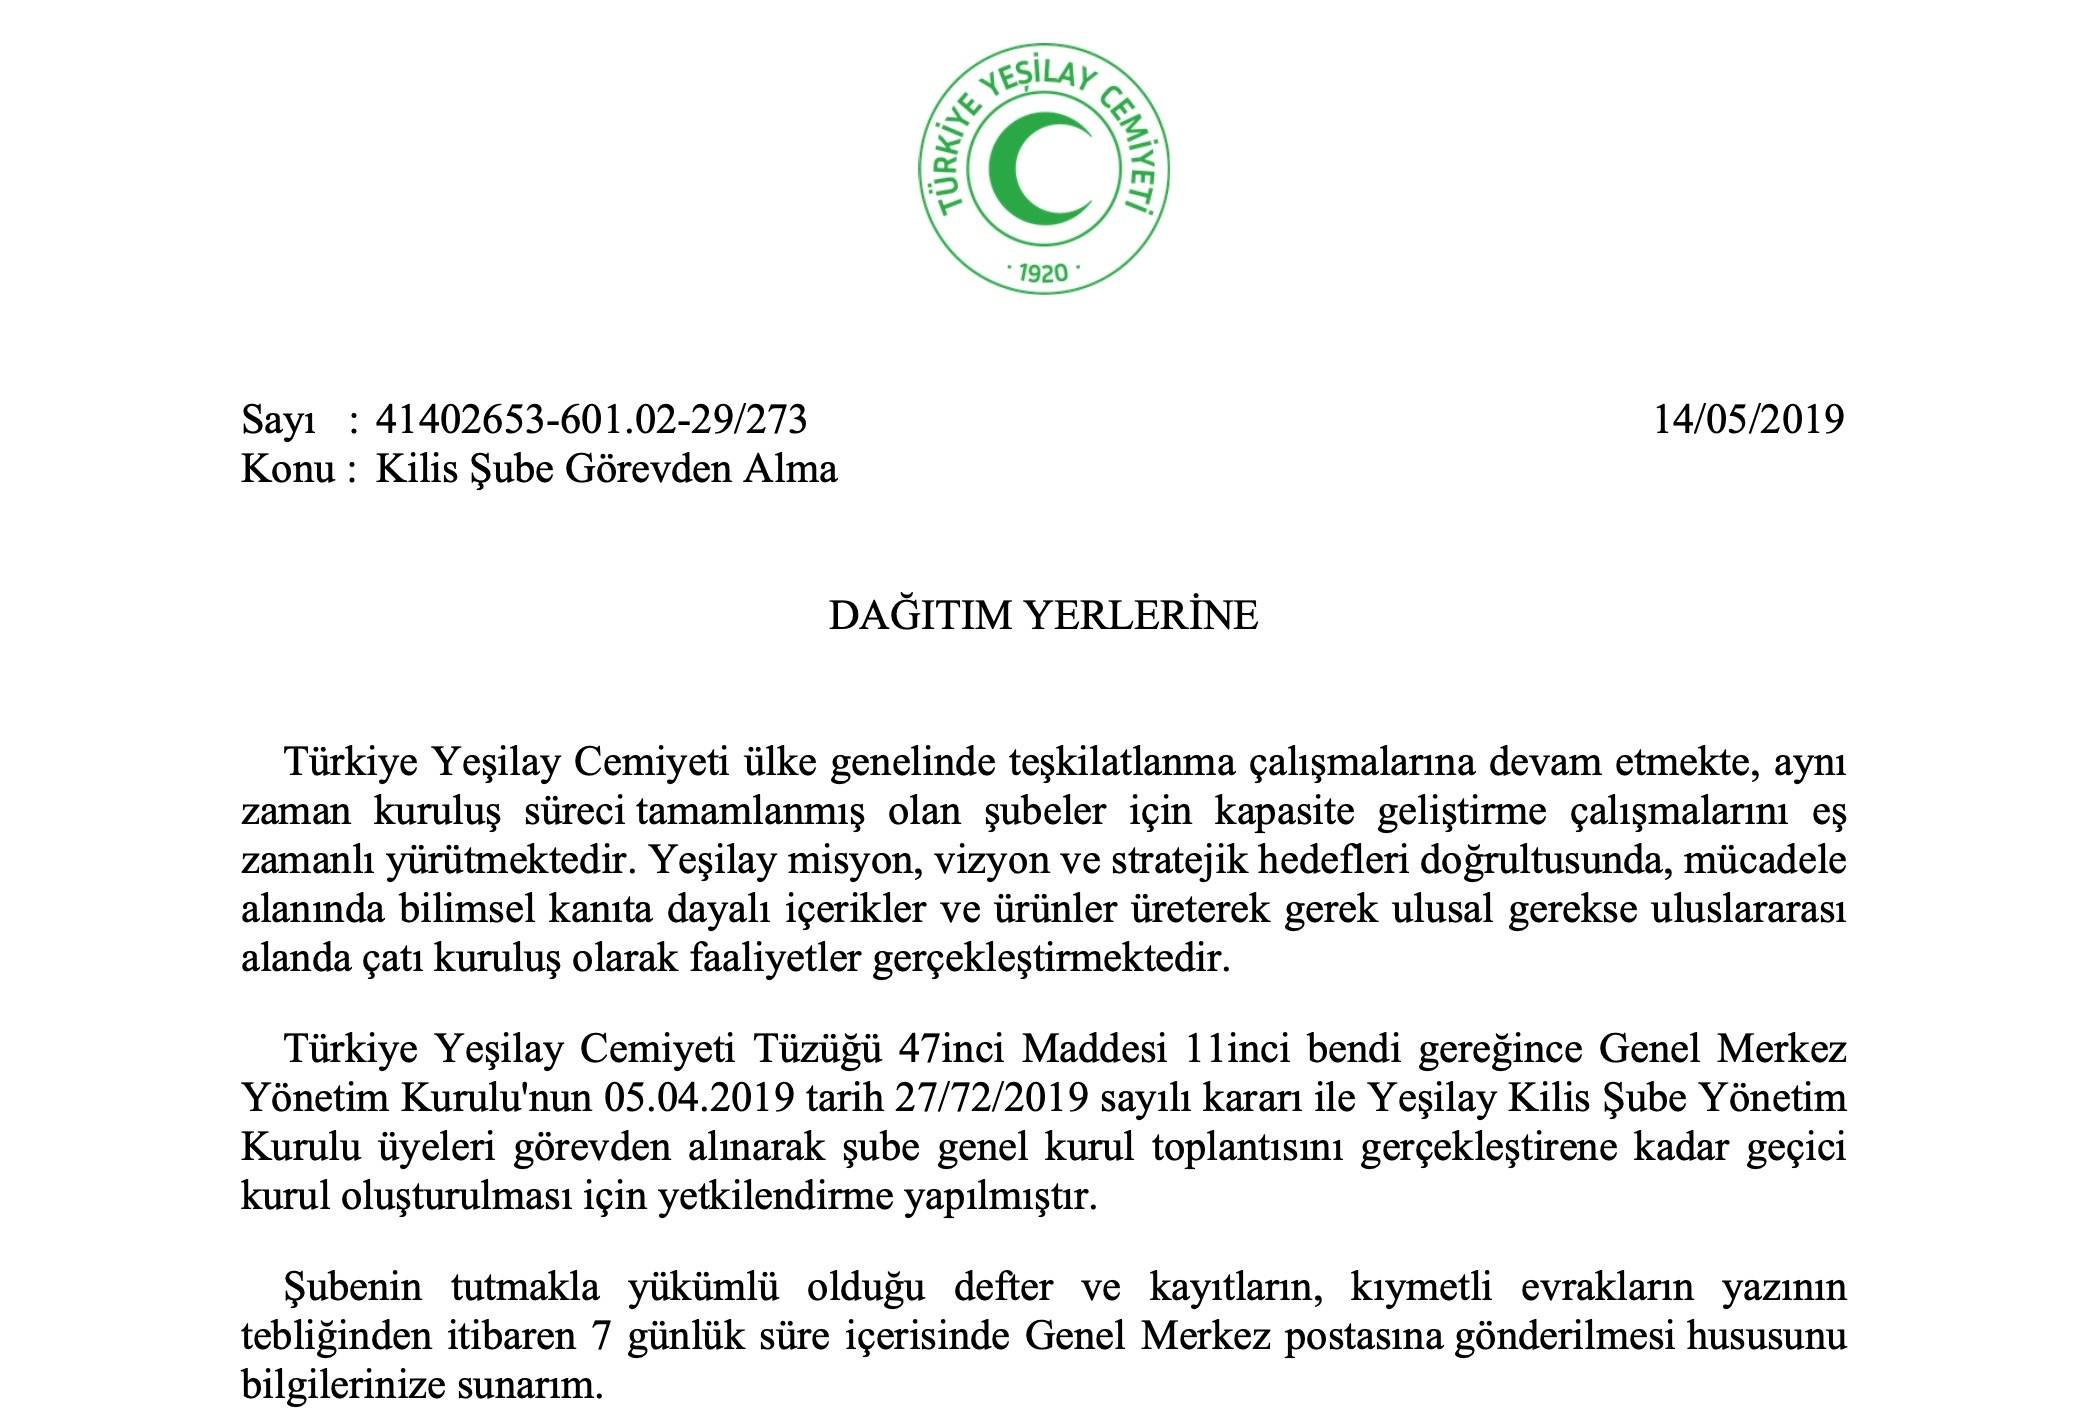 Ahmet Zorlu AK Parti Kilis Milletvekili Reşit Polat'ın Danışmanlığını Yapmıştı